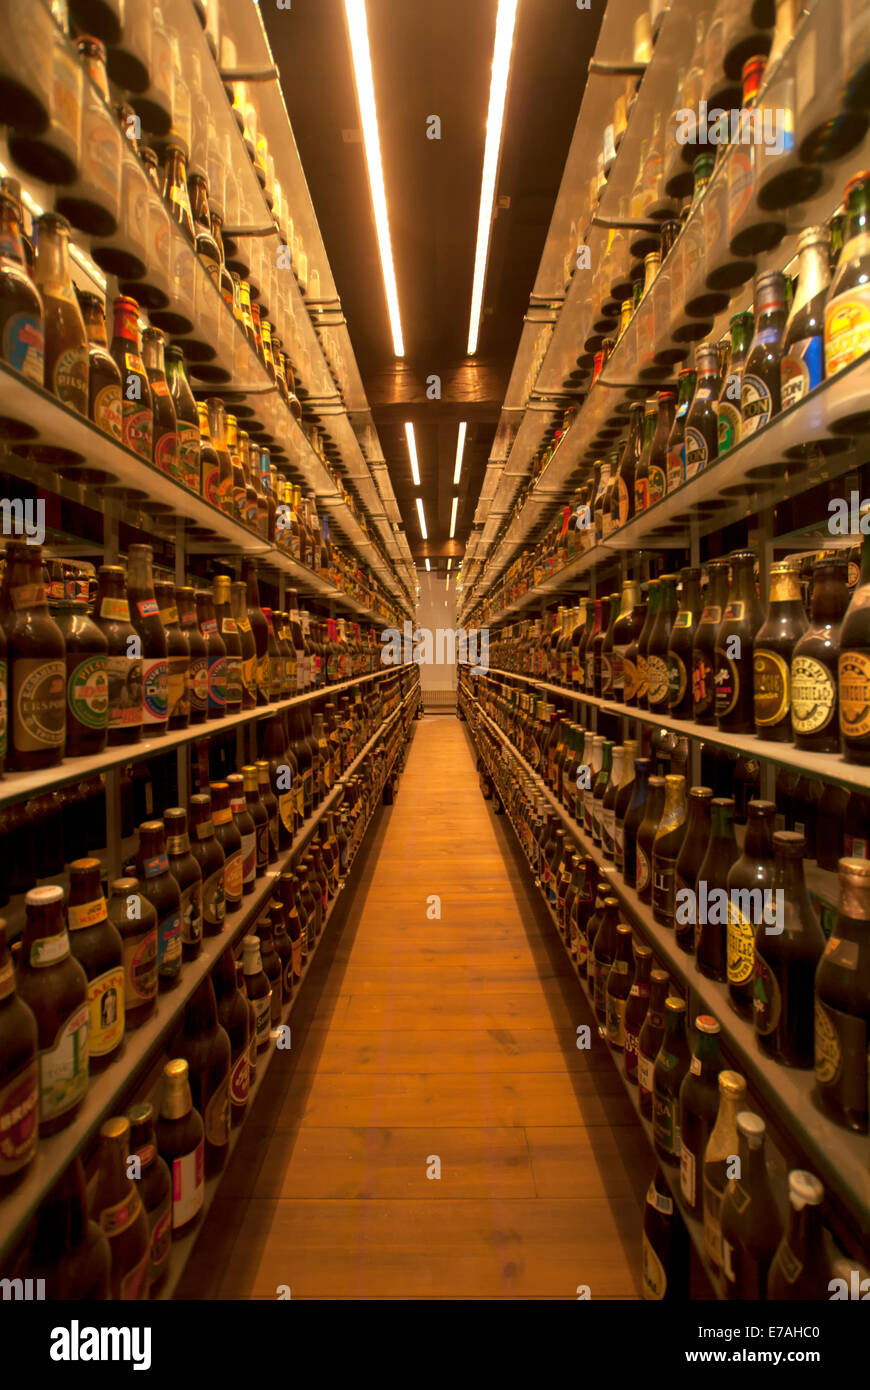 Più grande del mondo di bottiglia di birra insieme al museo Carlsberg Brewery. Foto Stock